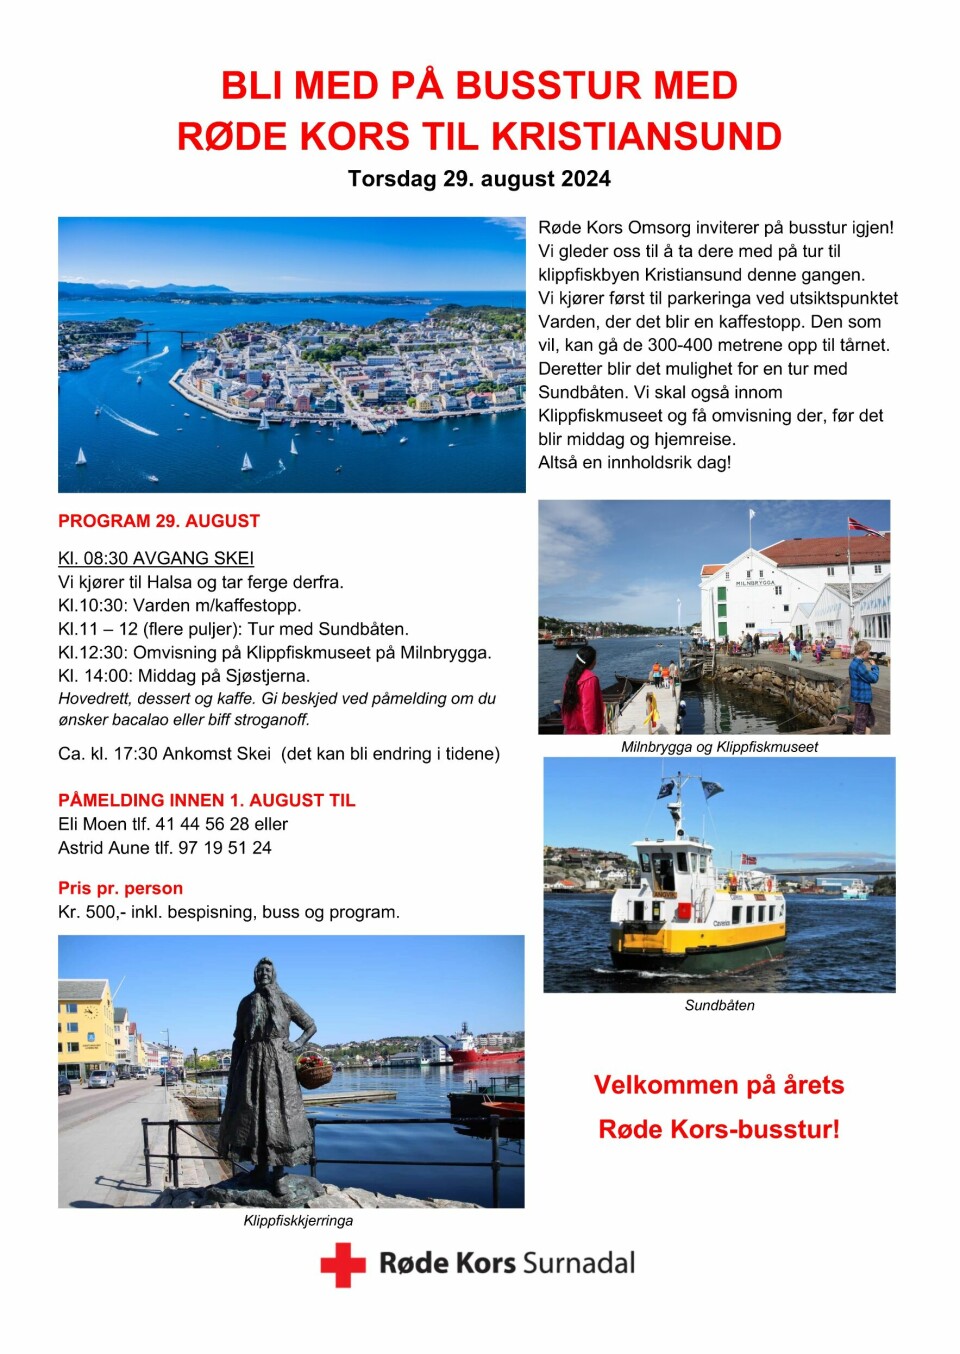 Reklame for busstur med bilder fra Kristiansund